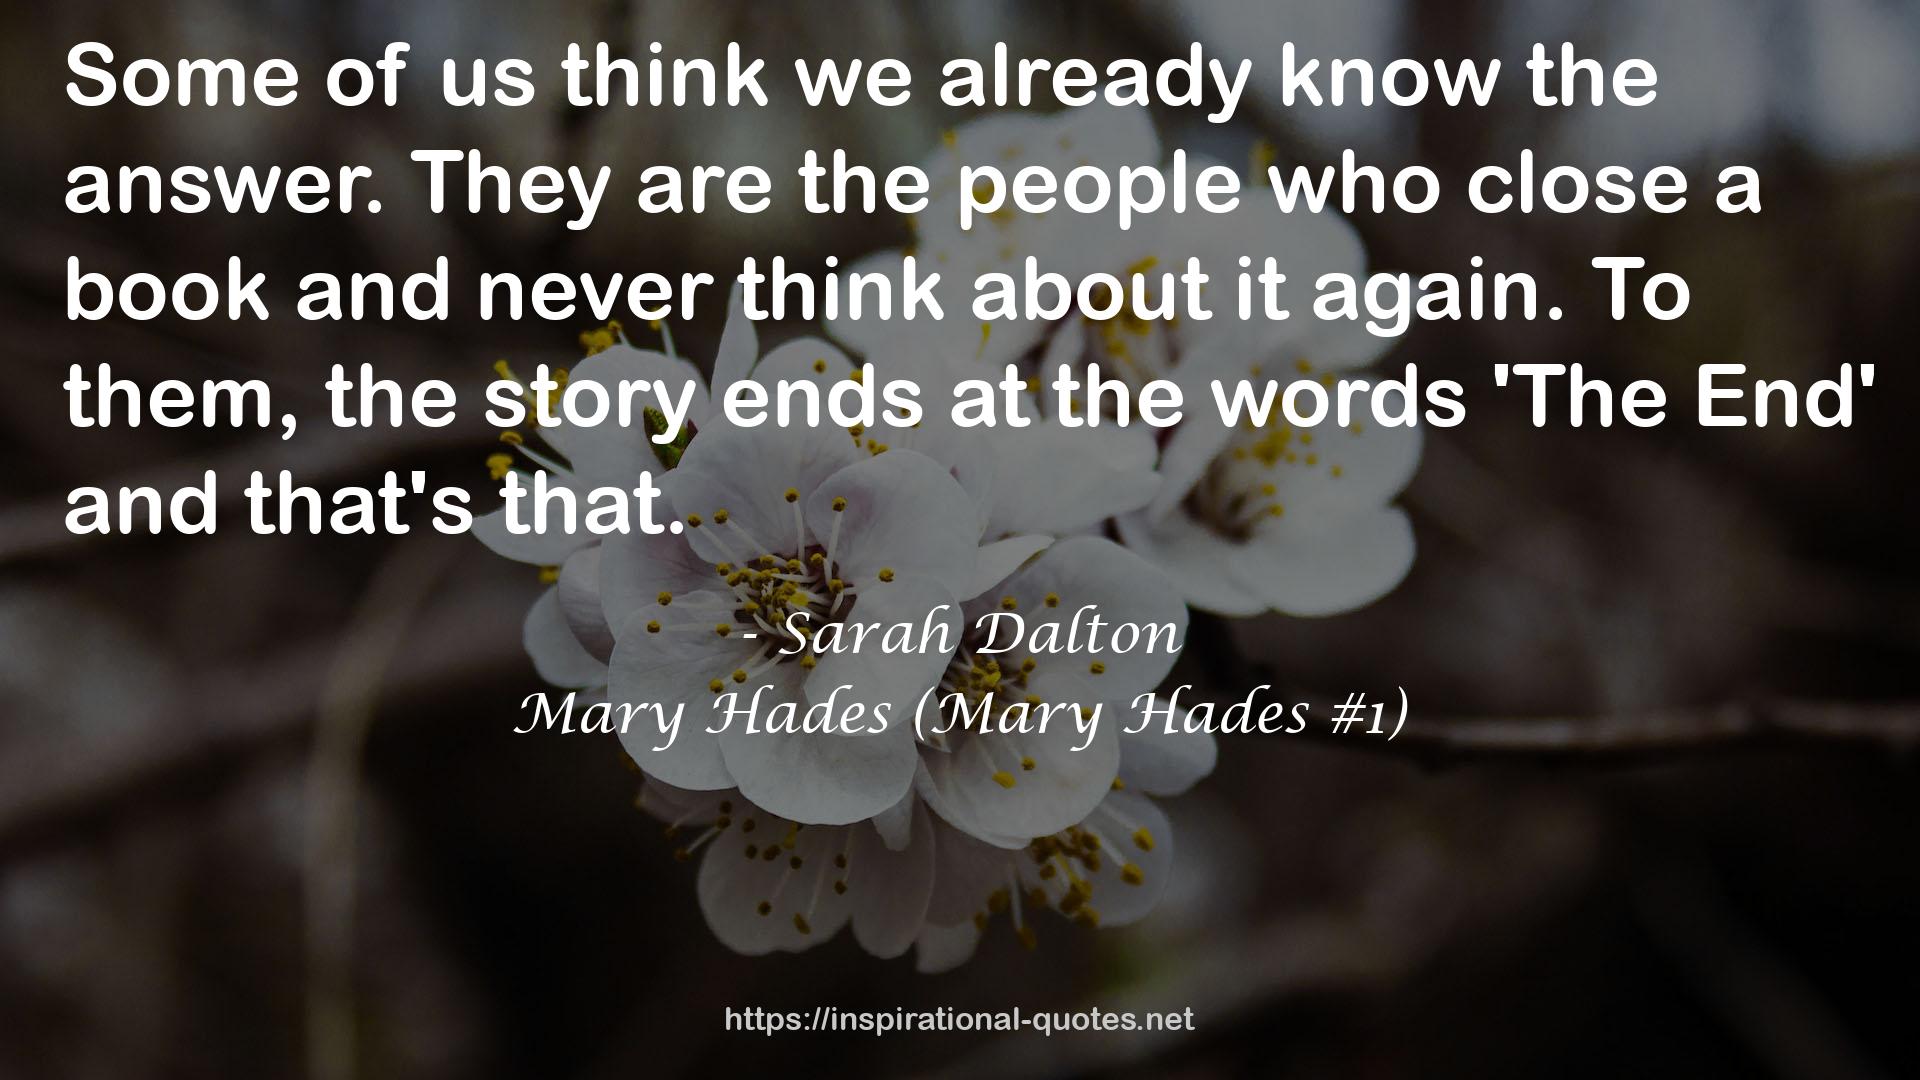 Mary Hades (Mary Hades #1) QUOTES